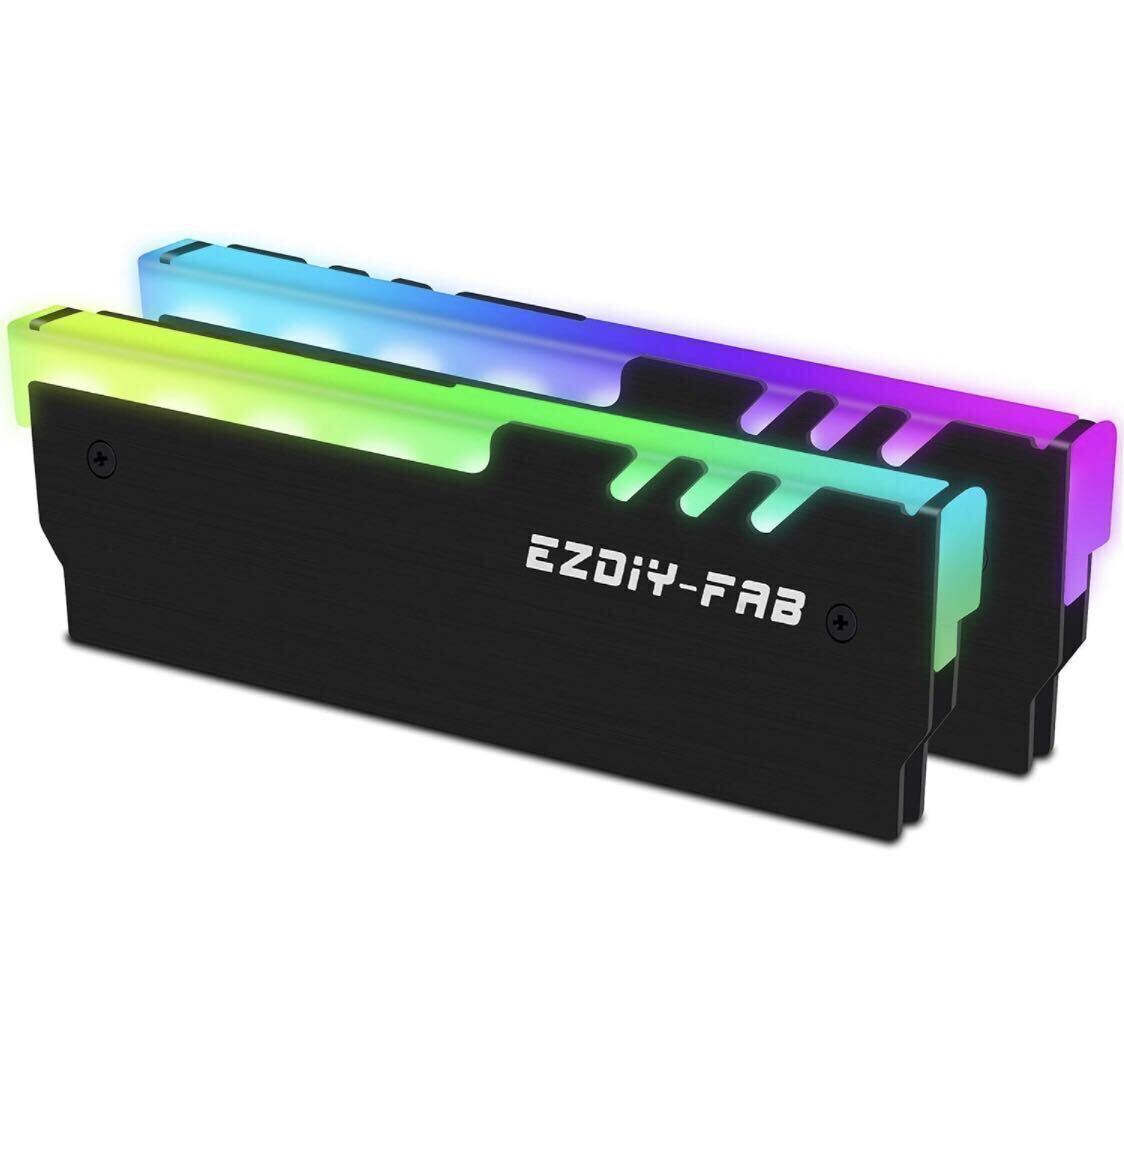 [ б/у ]Crucial настольный память DDR4 3200MHz (8GB 2 листов комплект итого 16GB) + EZDIY-FAB RAM охлаждающий ARGB память теплоотвод 